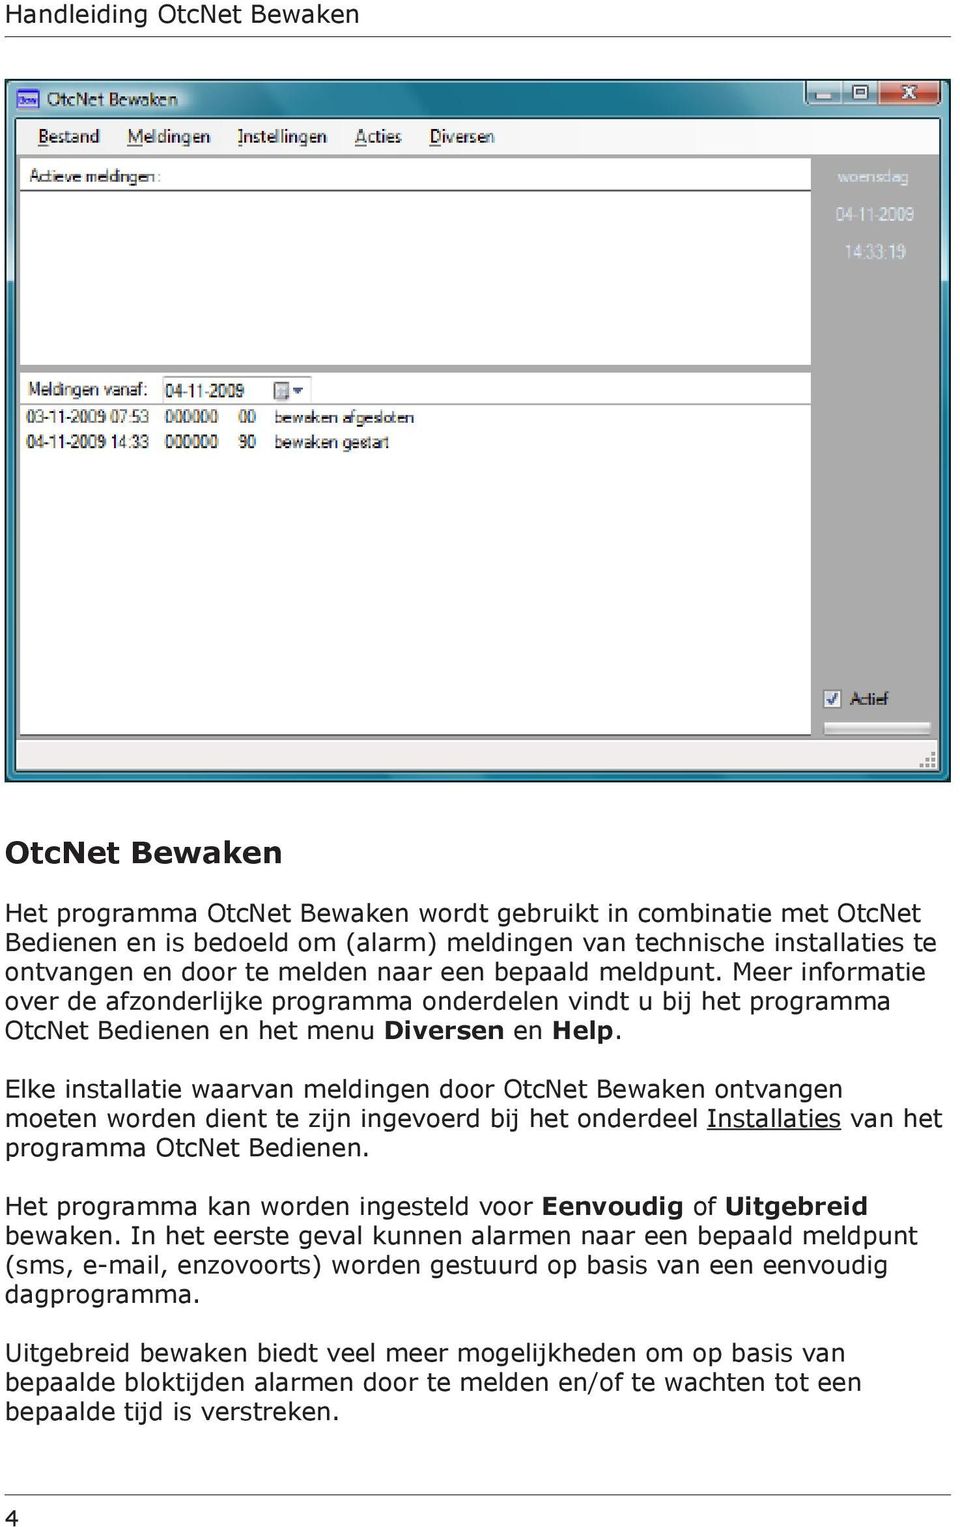 Elke installatie waarvan meldingen door OtcNet Bewaken ontvangen moeten worden dient te zijn ingevoerd bij het onderdeel Installaties van het programma OtcNet Bedienen.